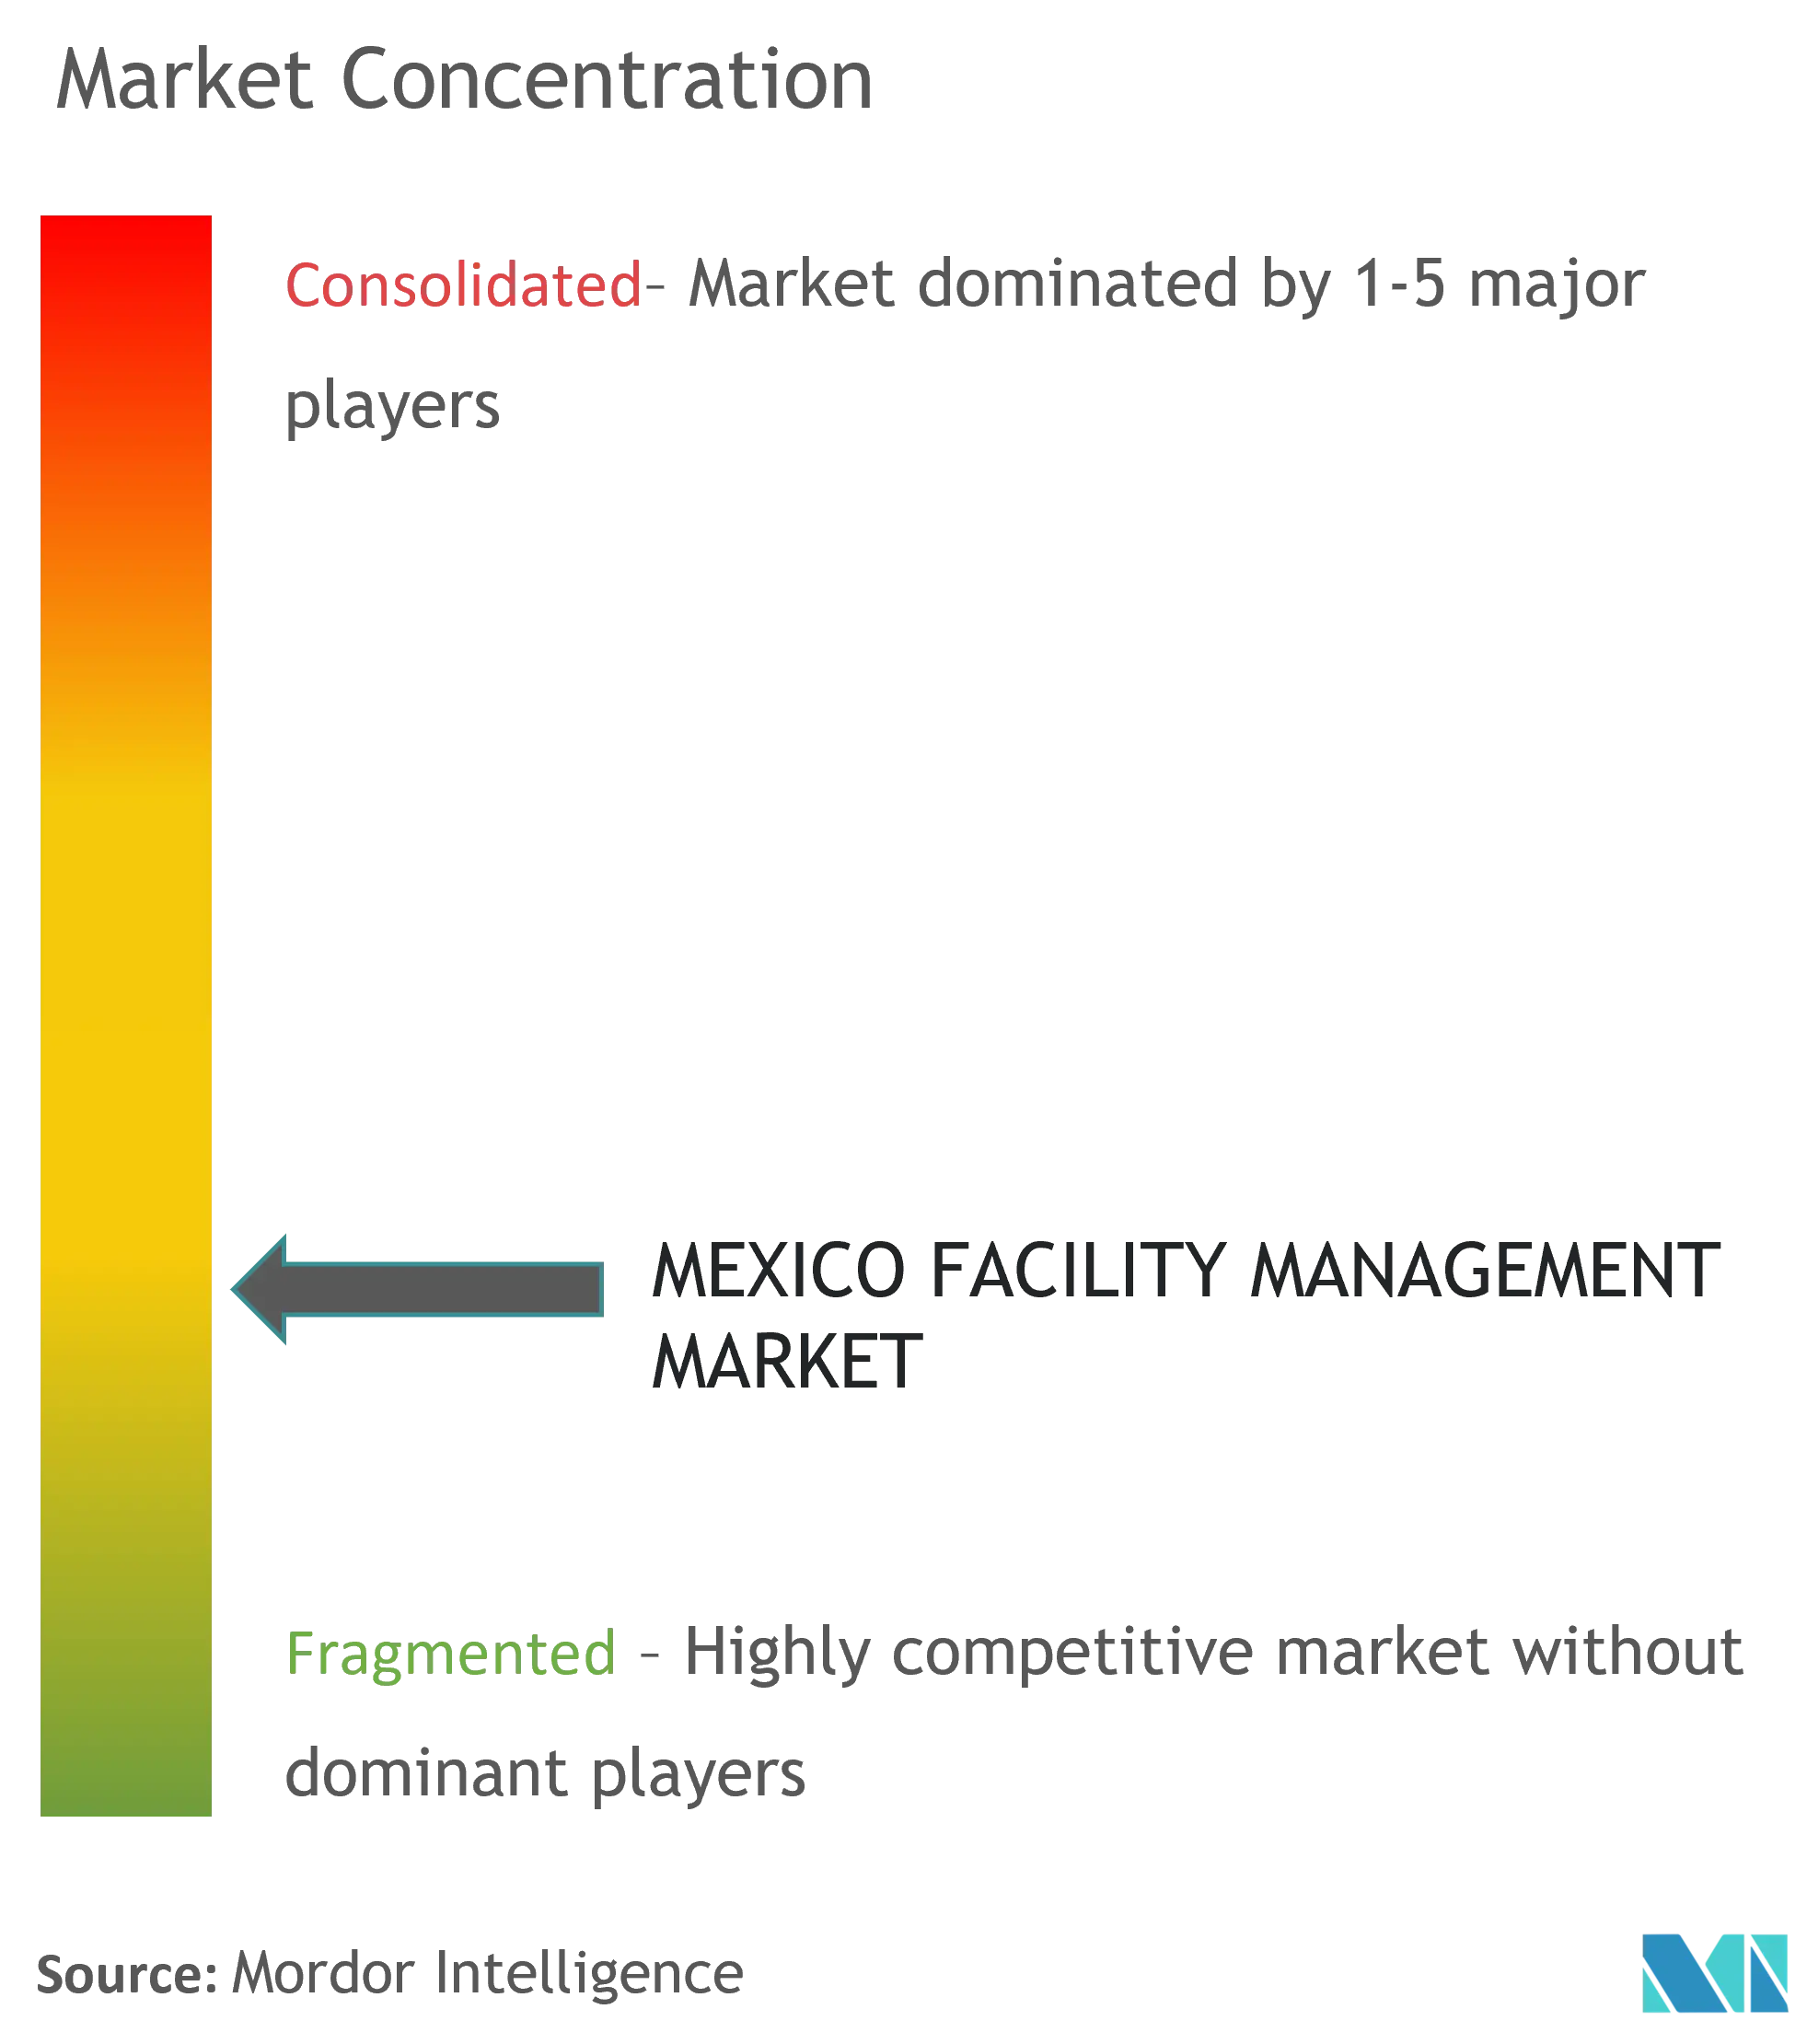 Mexico FM Market - Market Concentration.png